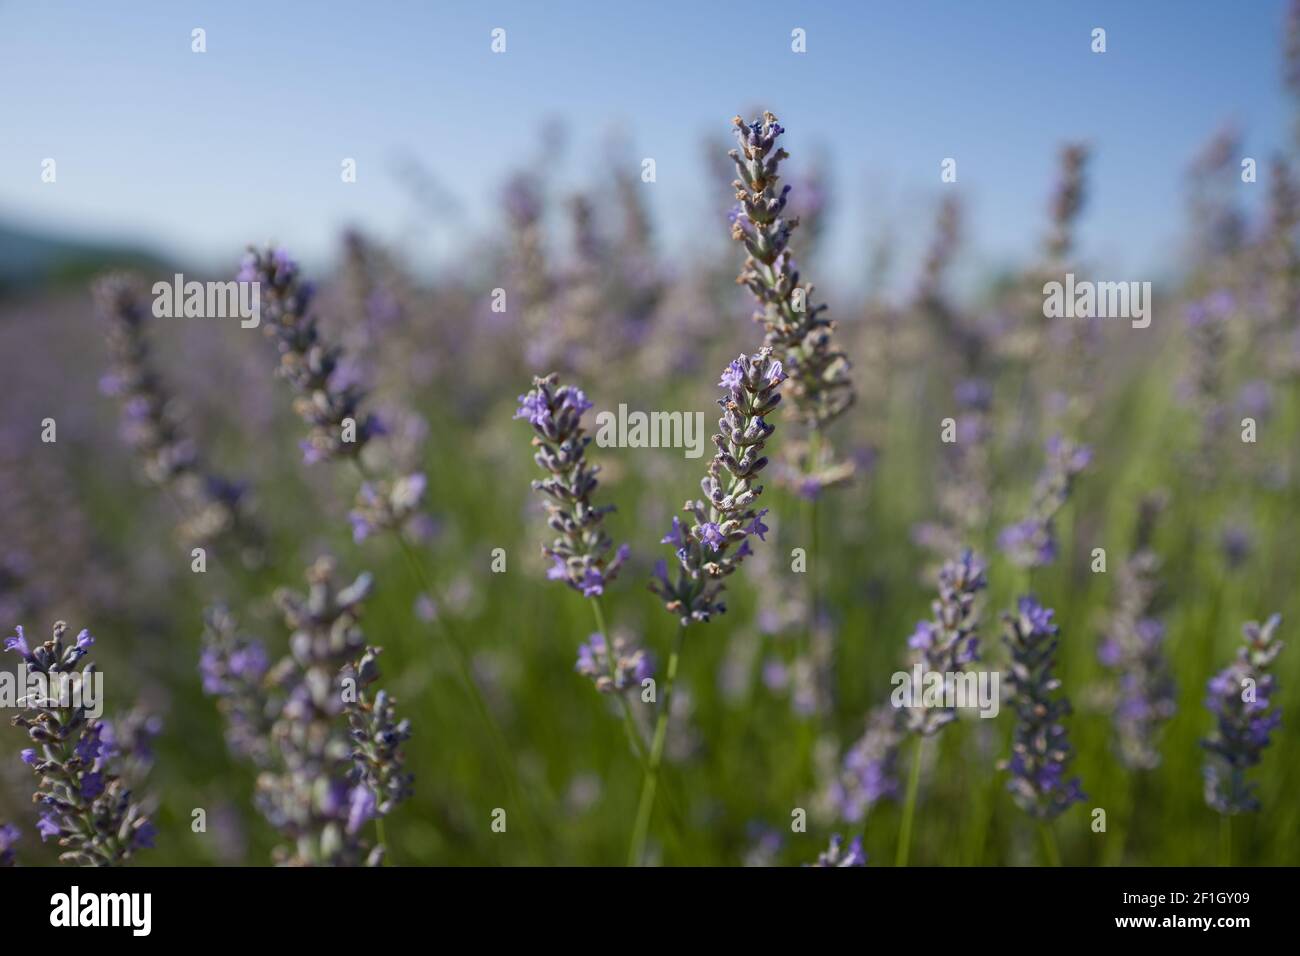 Farm und Reihen von duftenden Blumen in den Lavendelfeldern Der französischen Provence bei Valensole - Reisen Sie durch Frankreich - Cote d'Azur - Provence Stockfoto